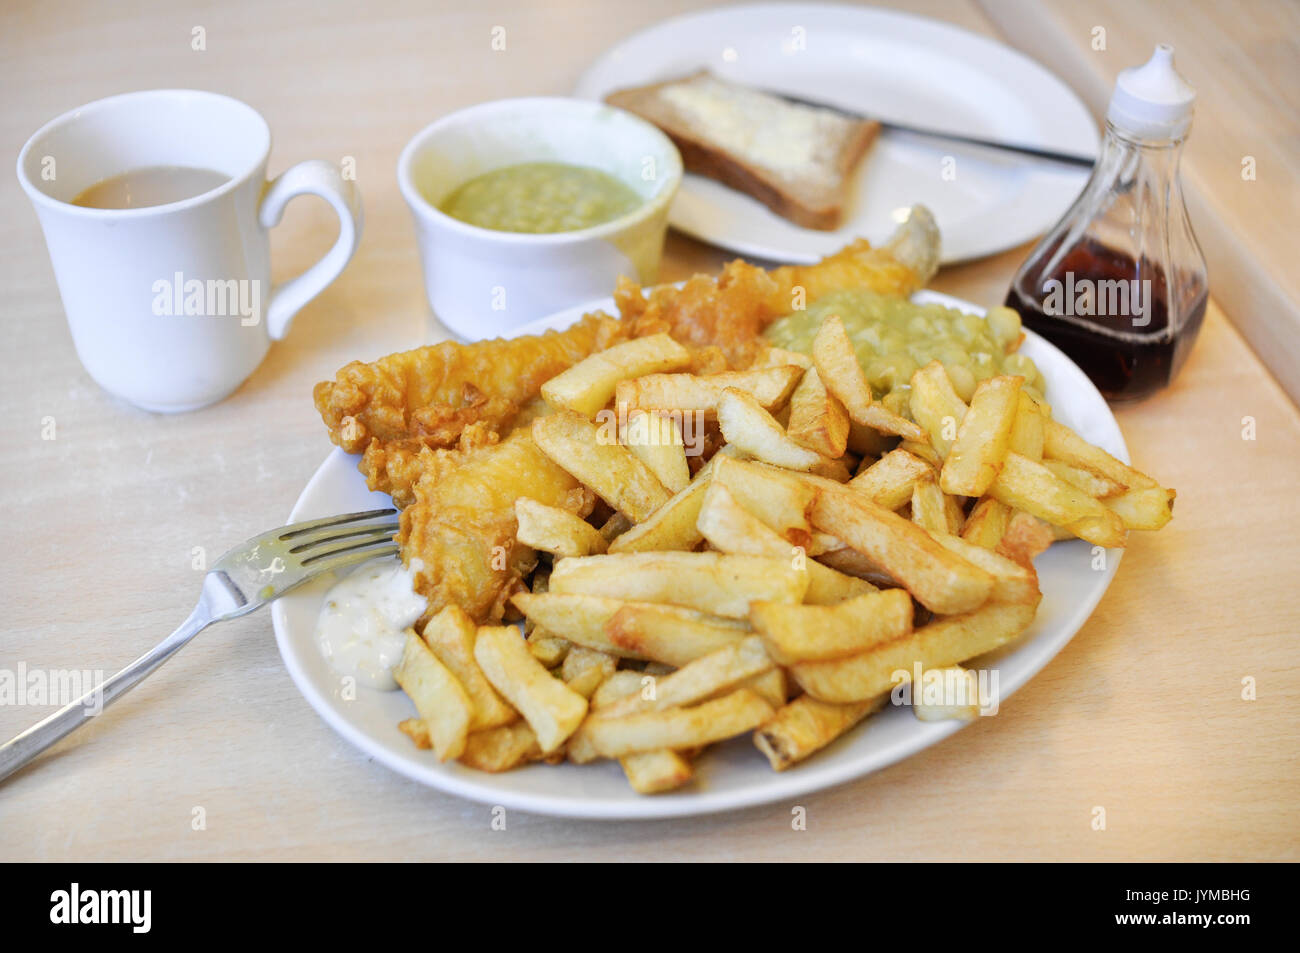 Un plat de poisson et frites britannique traditionnel, avec des petits pois, du pain et du beurre, du vinaigre, de la sauce tartare, et une tasse de thé. Banque D'Images